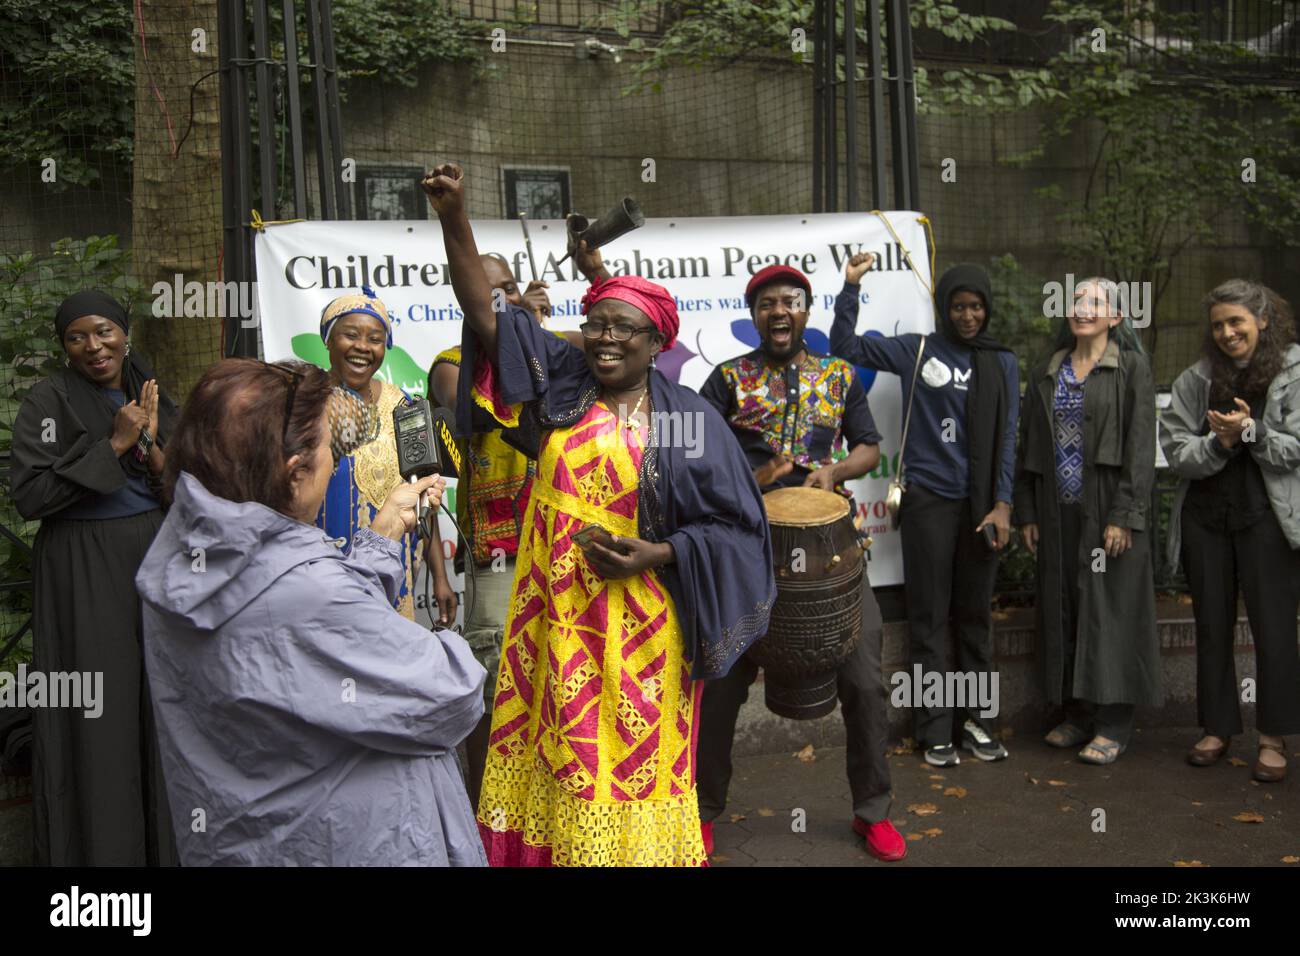 Les membres de divers groupes religieux et religions se réunissent par l'Organisation des Nations Unies pour la Marche annuelle de la paix des enfants d'Abraham à New York. Banque D'Images